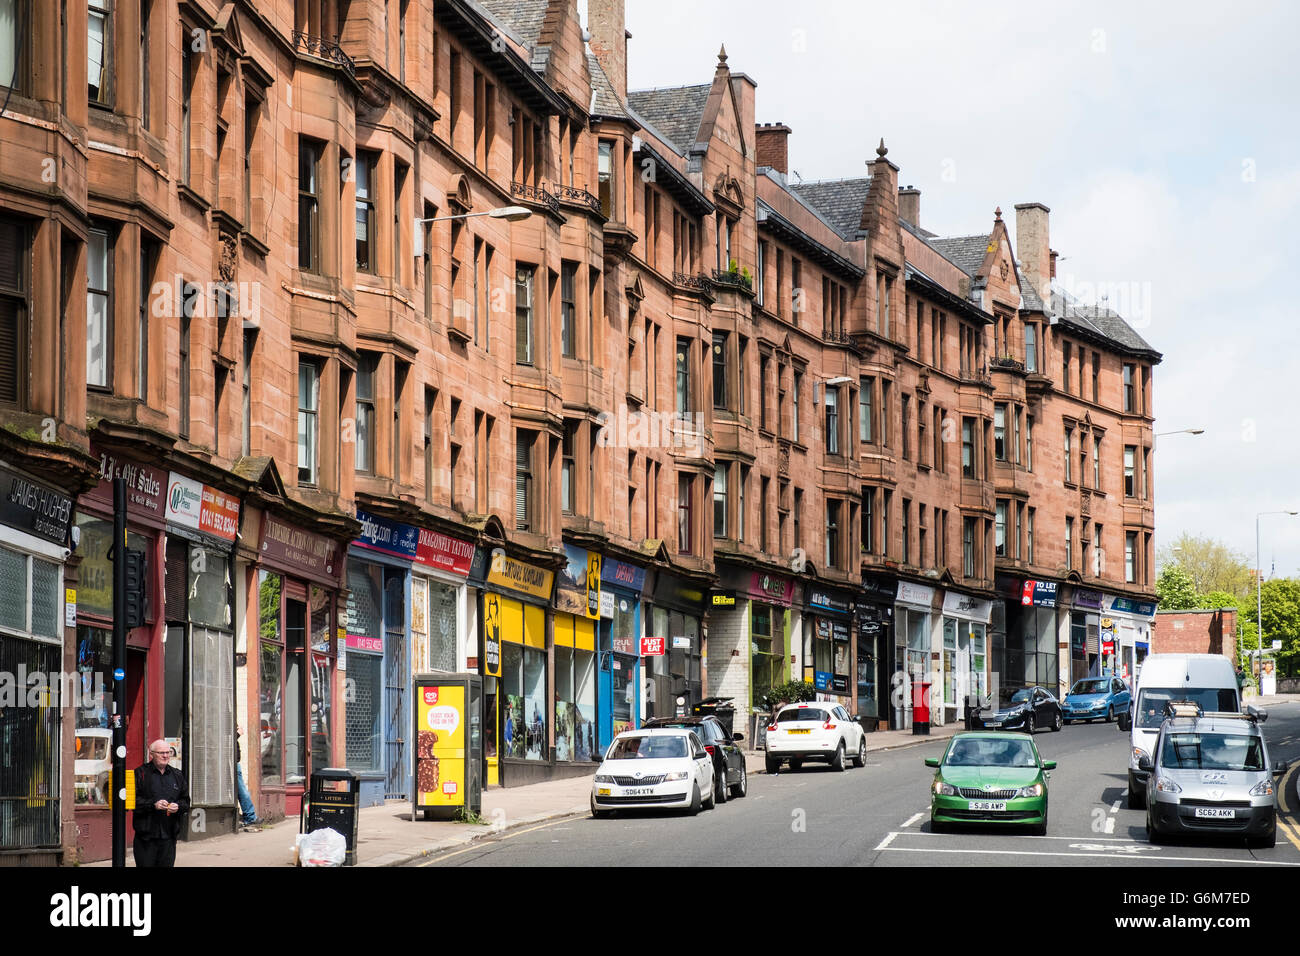 Afficher le long de High Street avec grès traditionnels tenement apartment buildings in East End de Glasgow, Ecosse, Royaume-Uni Banque D'Images